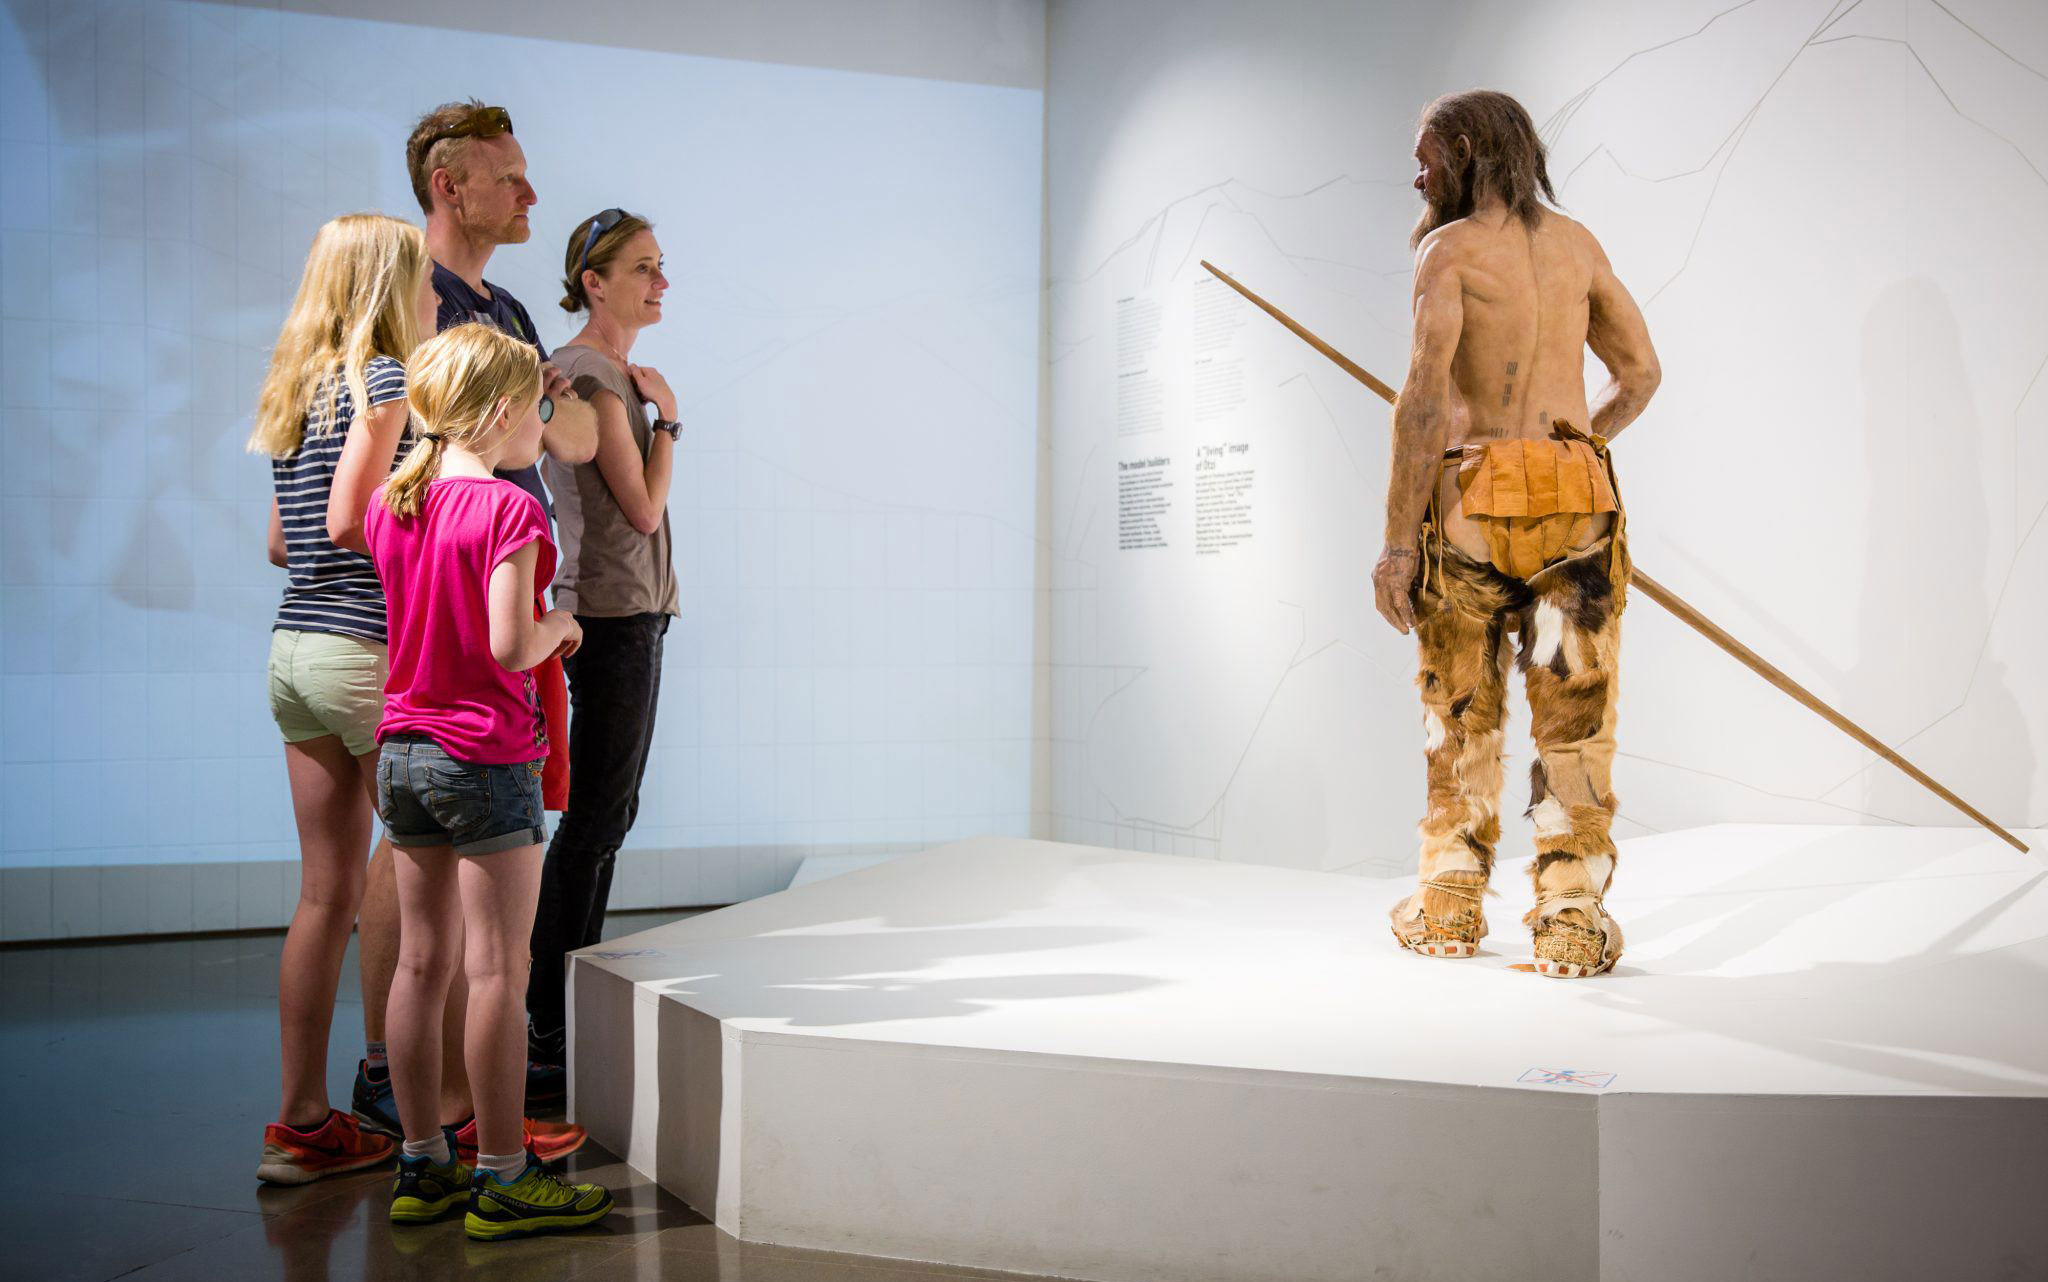 Ötzi the Iceman (c) Museo Archeologico dell’Alto Adige/FlipFlop Collective